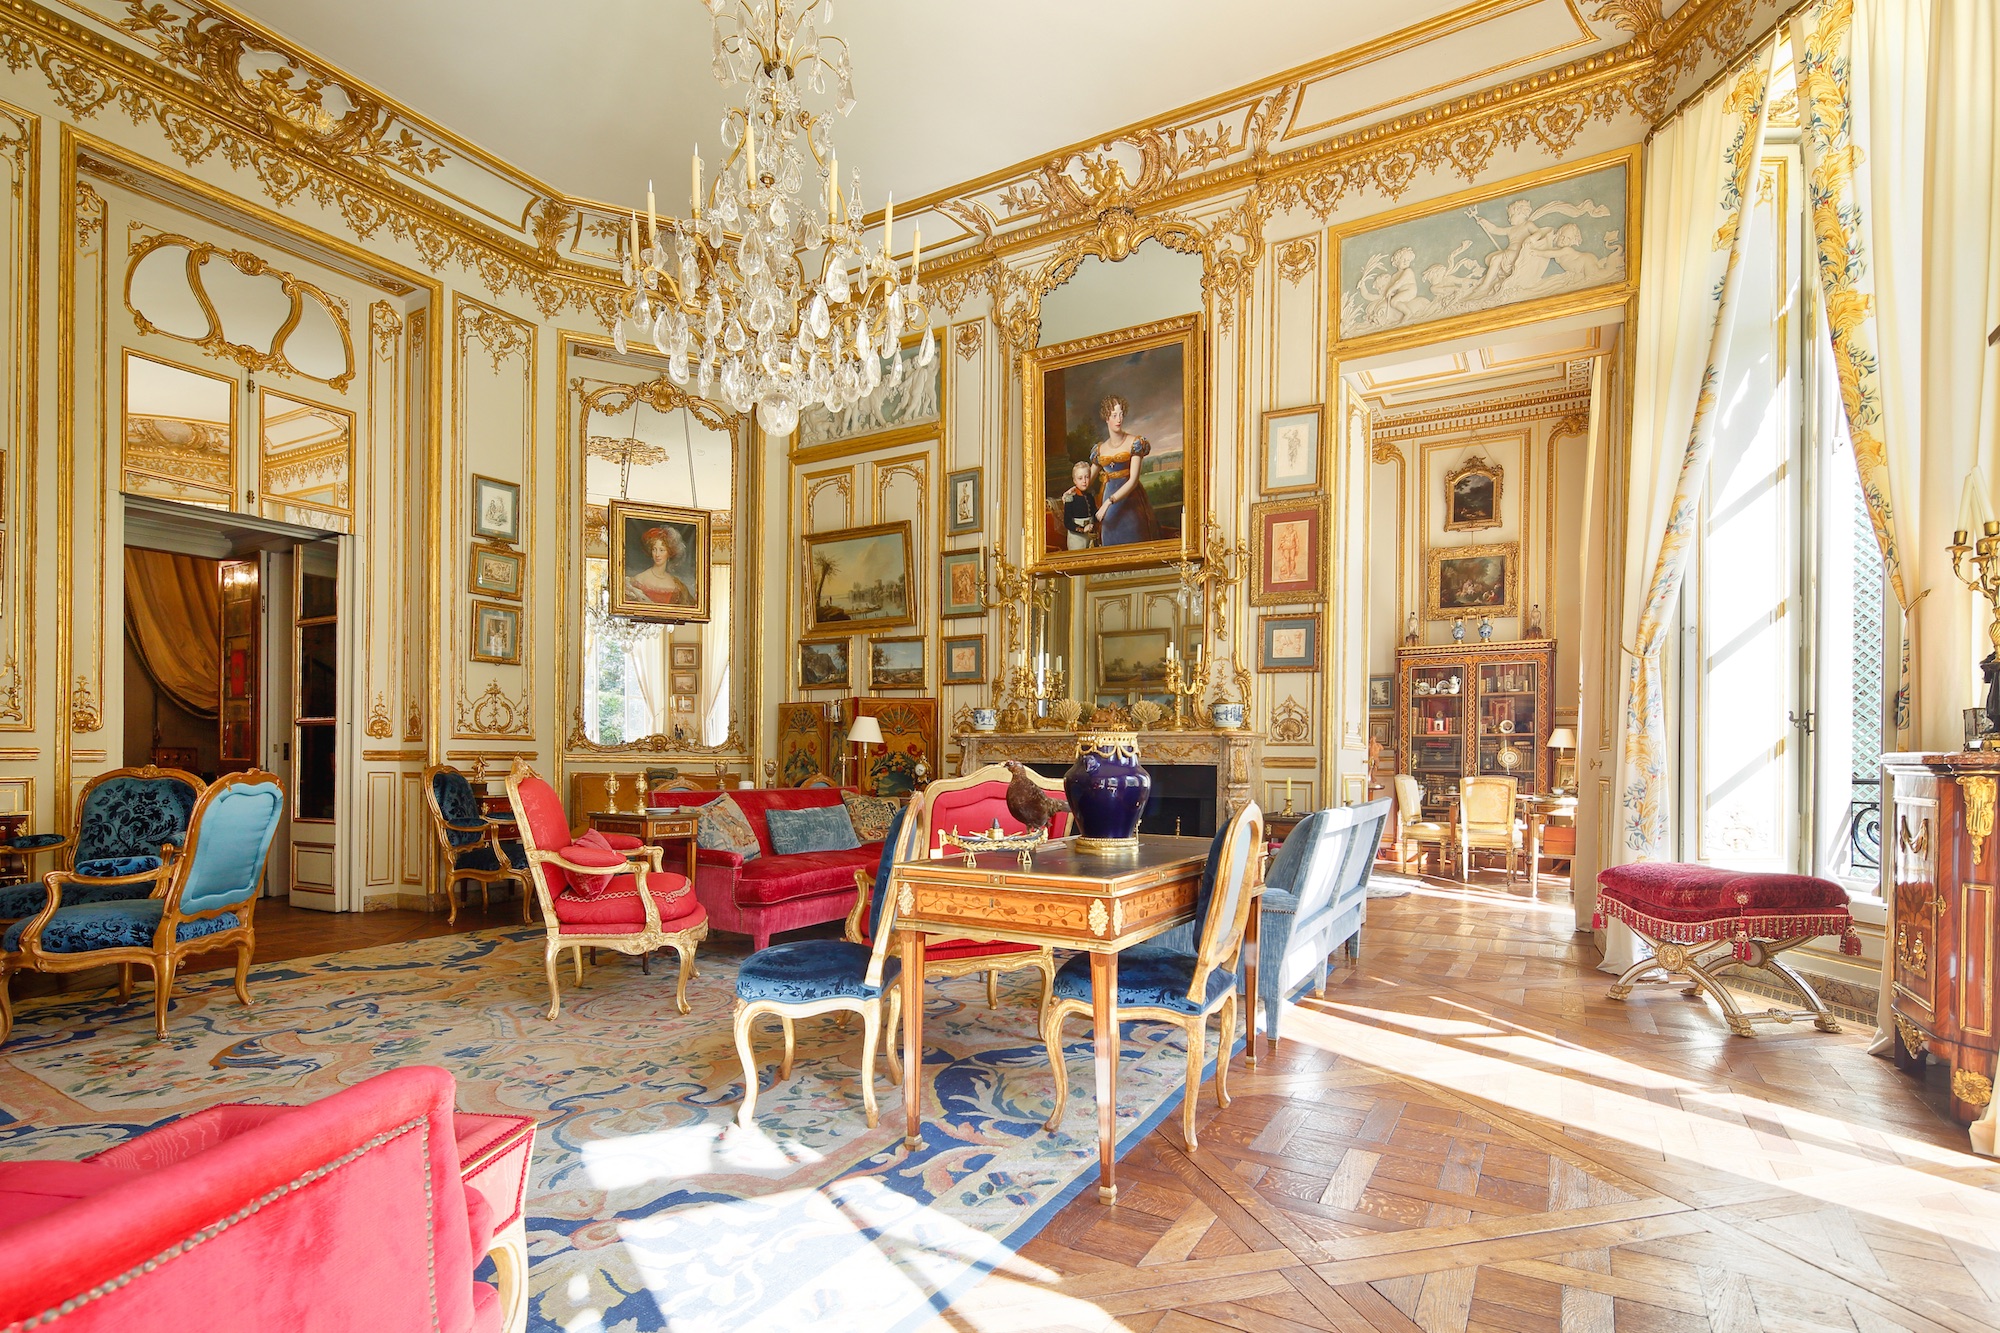 La duchesse de Berry régnait sur le grand salon de l’hôtel de Lannion. © Sotheby’s Art Digital Studio